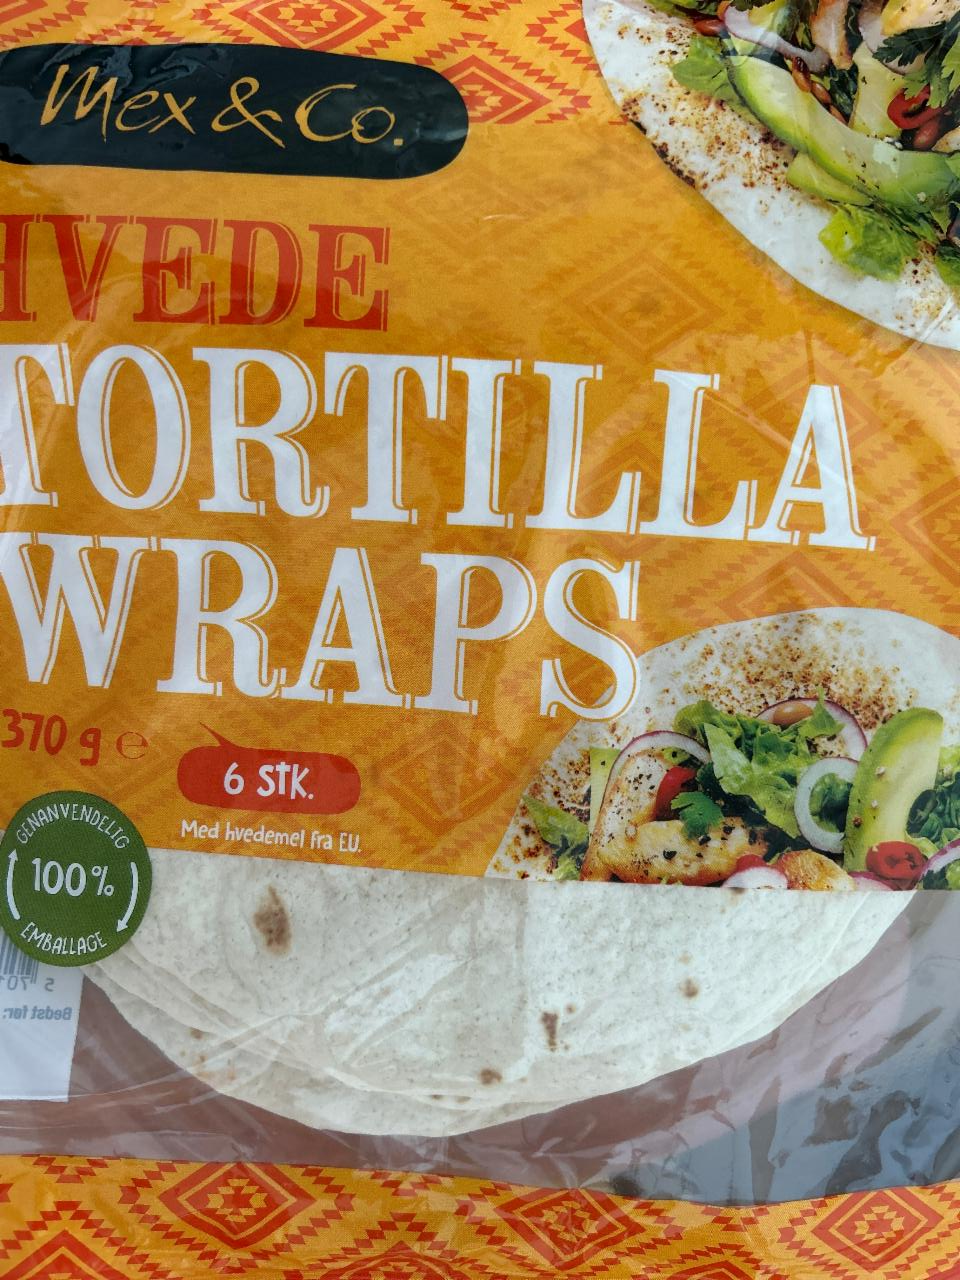 Fotografie - Hvede tortilla wraps Mex & Co.